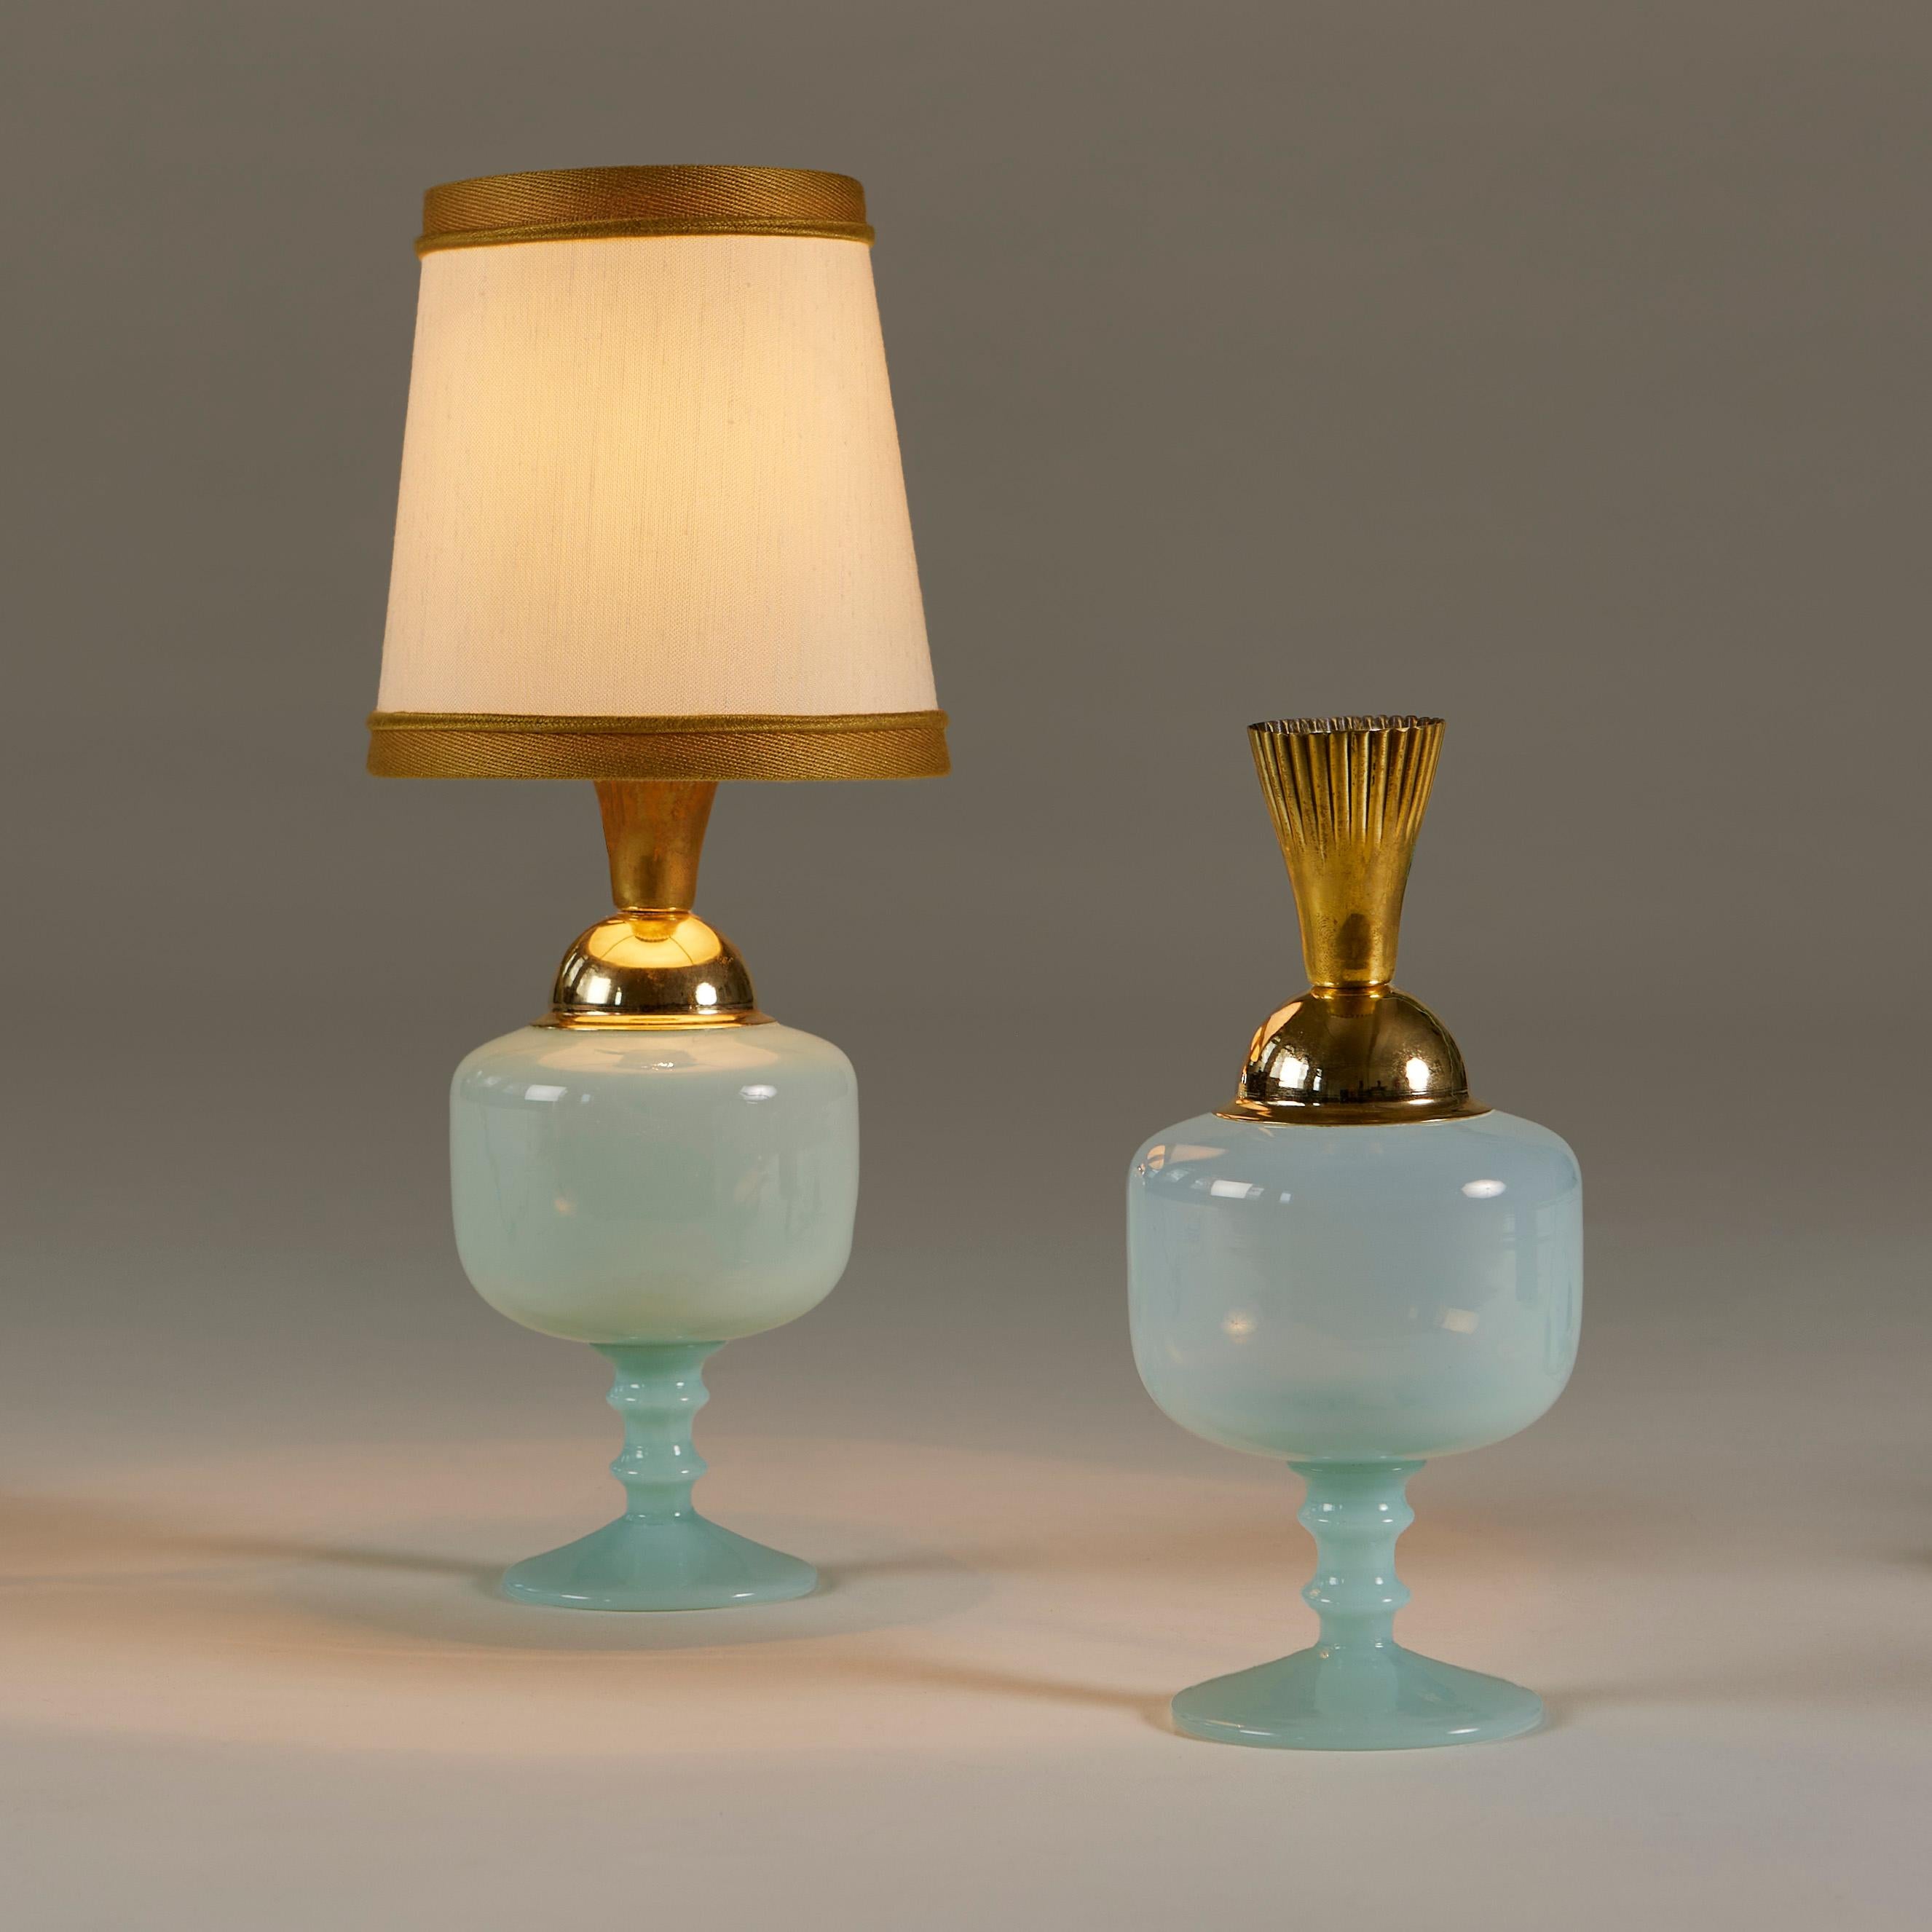 Lampes de table en verre turquoise pâle en forme d'urne avec des accessoires décoratifs en laiton. Parfait pour la coiffeuse, le bureau ou tout autre endroit nécessitant une touche d'ambiance.
